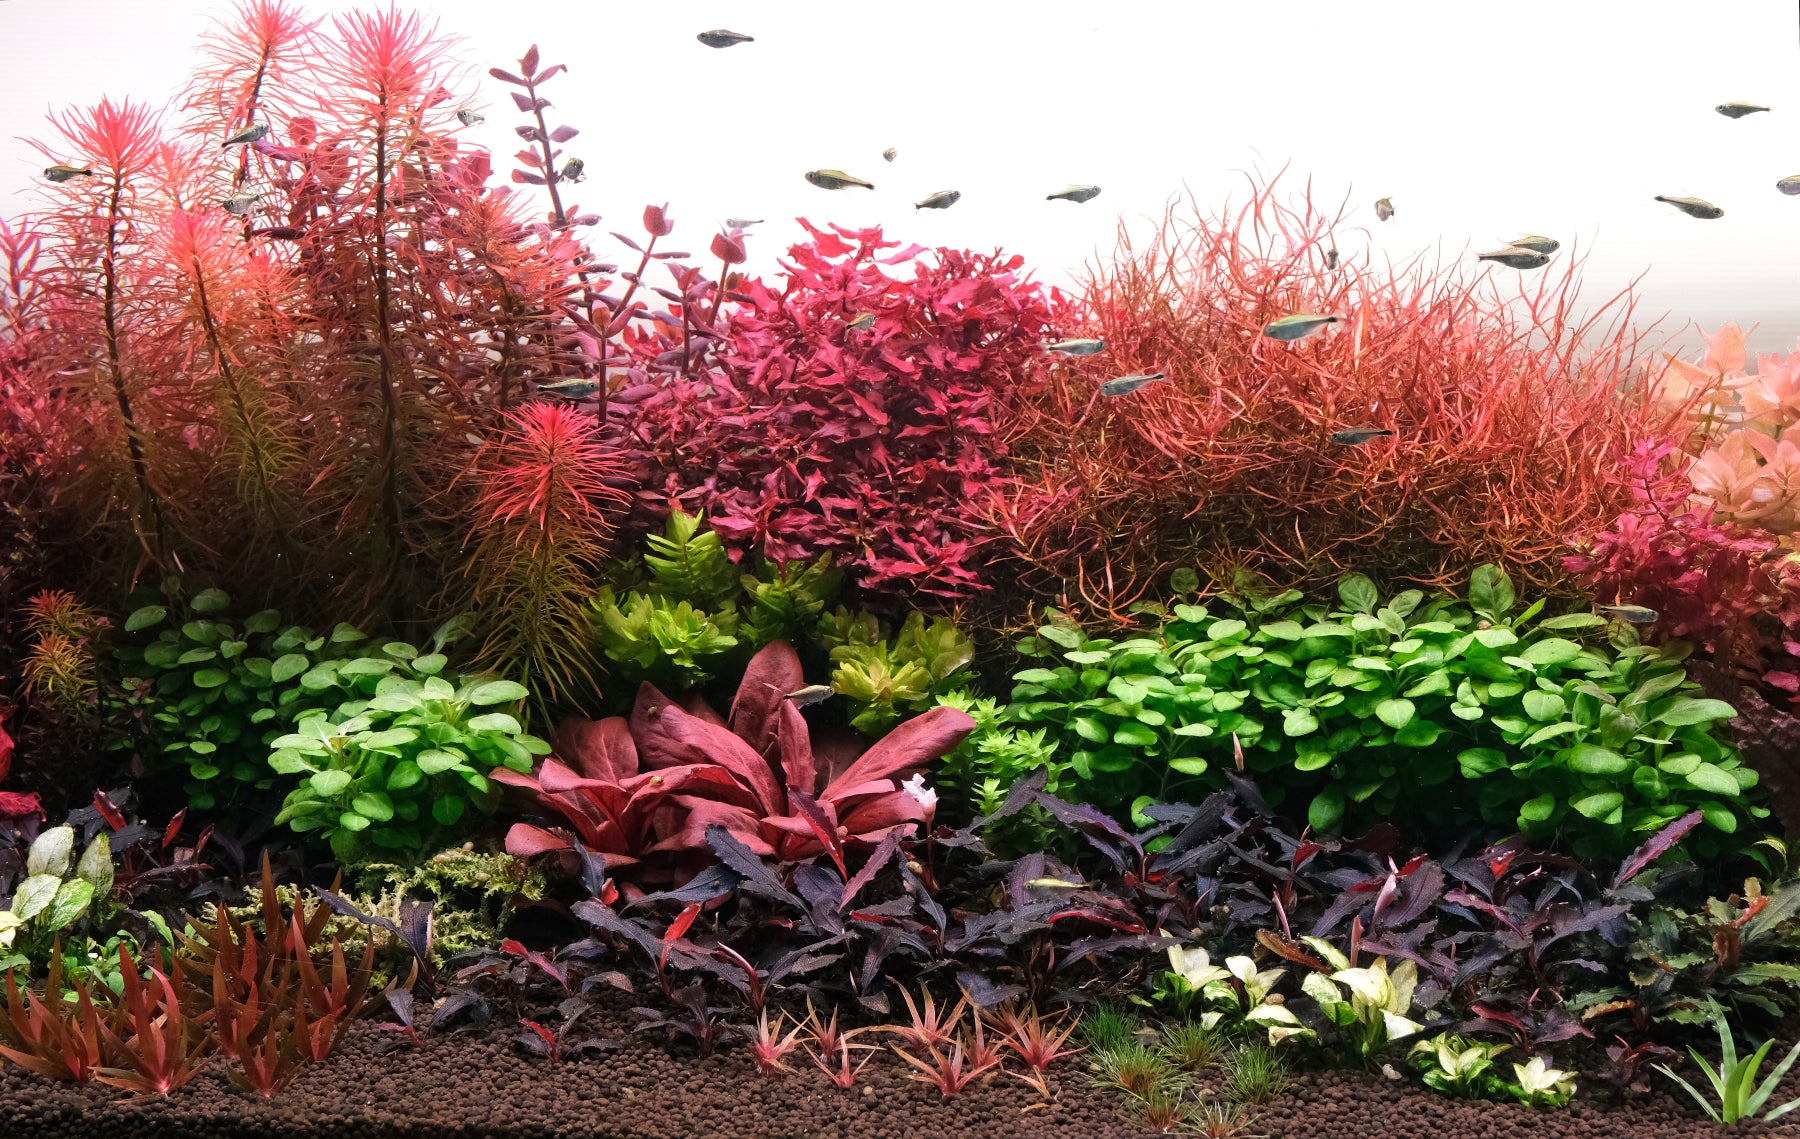 planted aquarium fertilizer